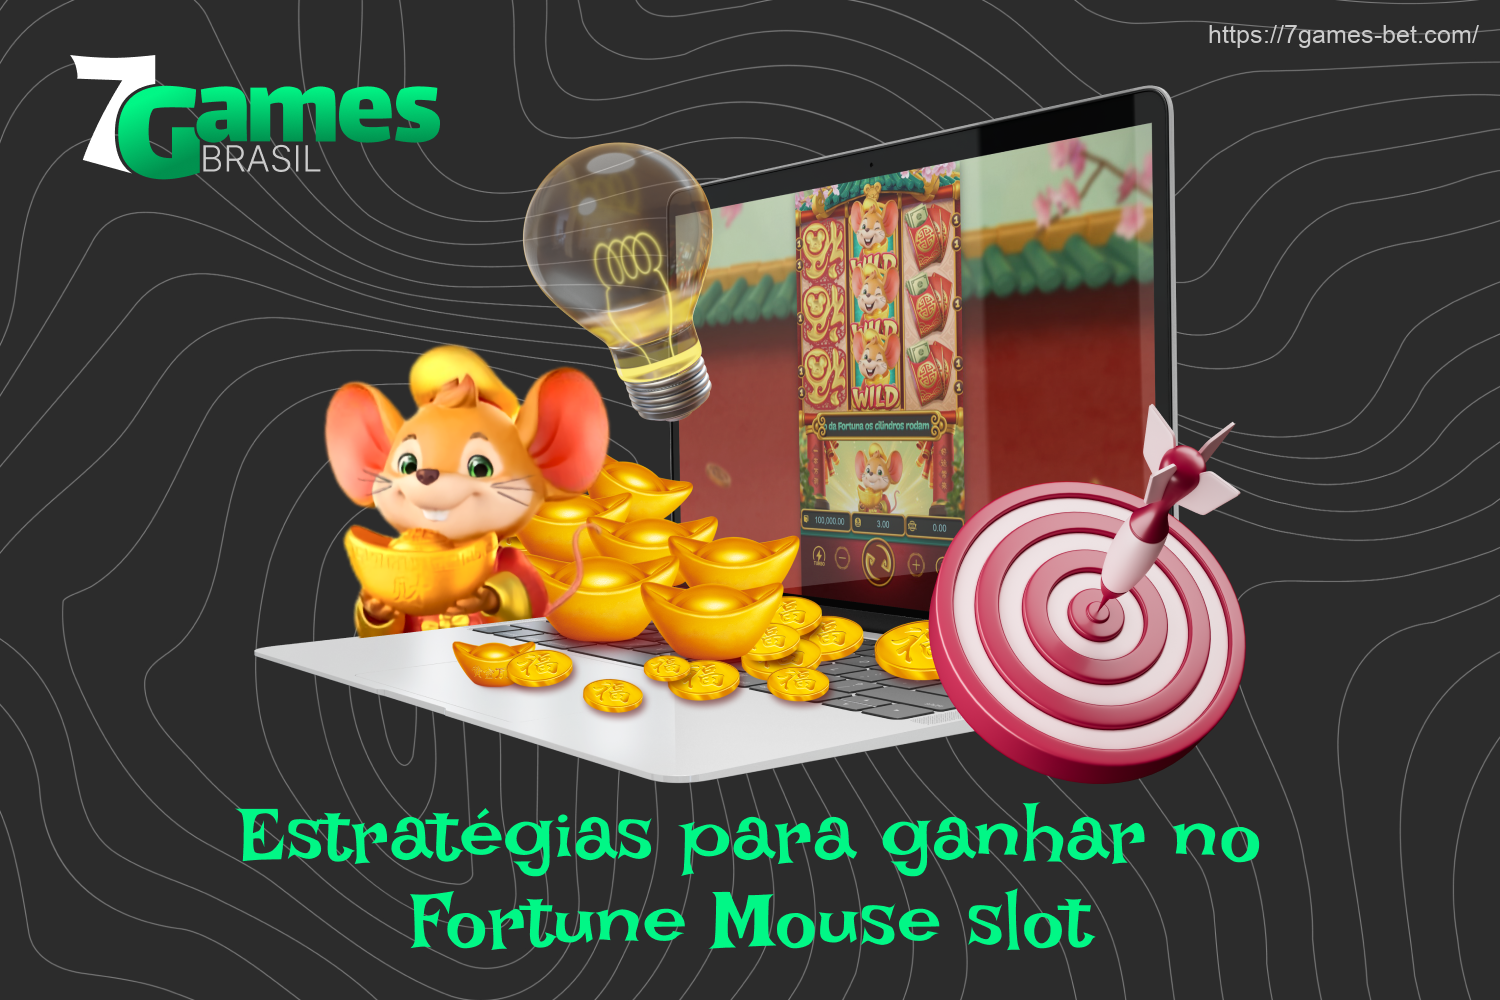 Para ser bem-sucedido no Fortune Mouse 7Games, você precisa experimentar diferentes estratégias, pois não existe uma única maneira correta de ganhar nesse jogo